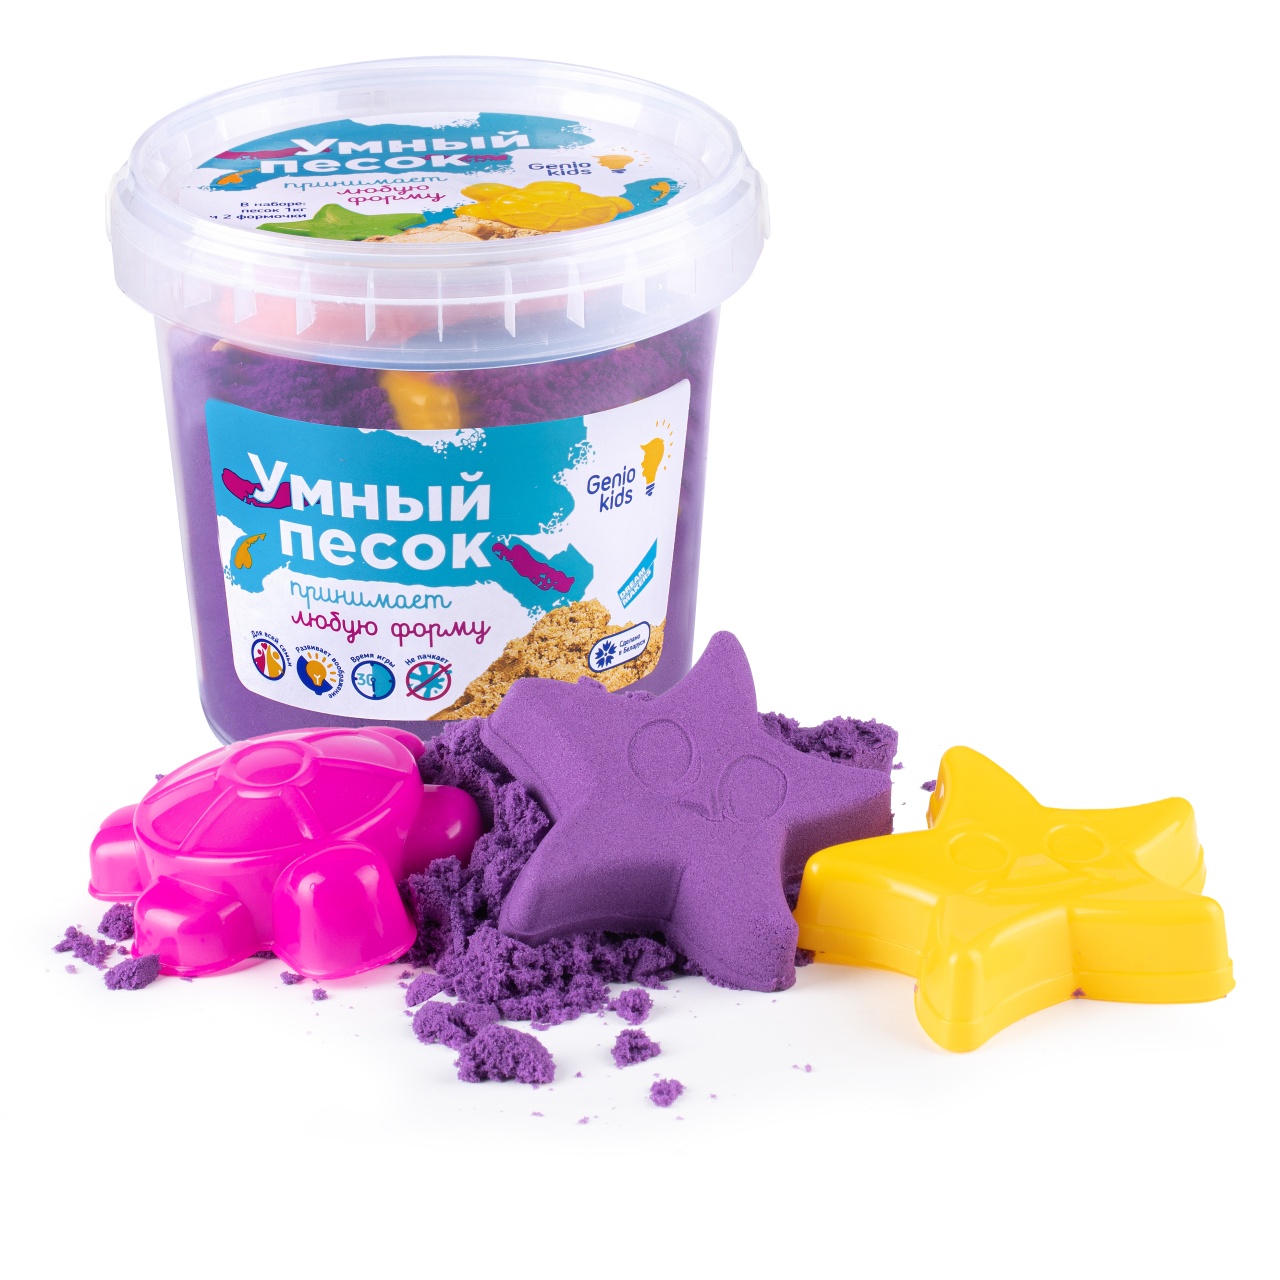 Набор для детского творчества "Умный песок 1. Фиолетовый" SSR102